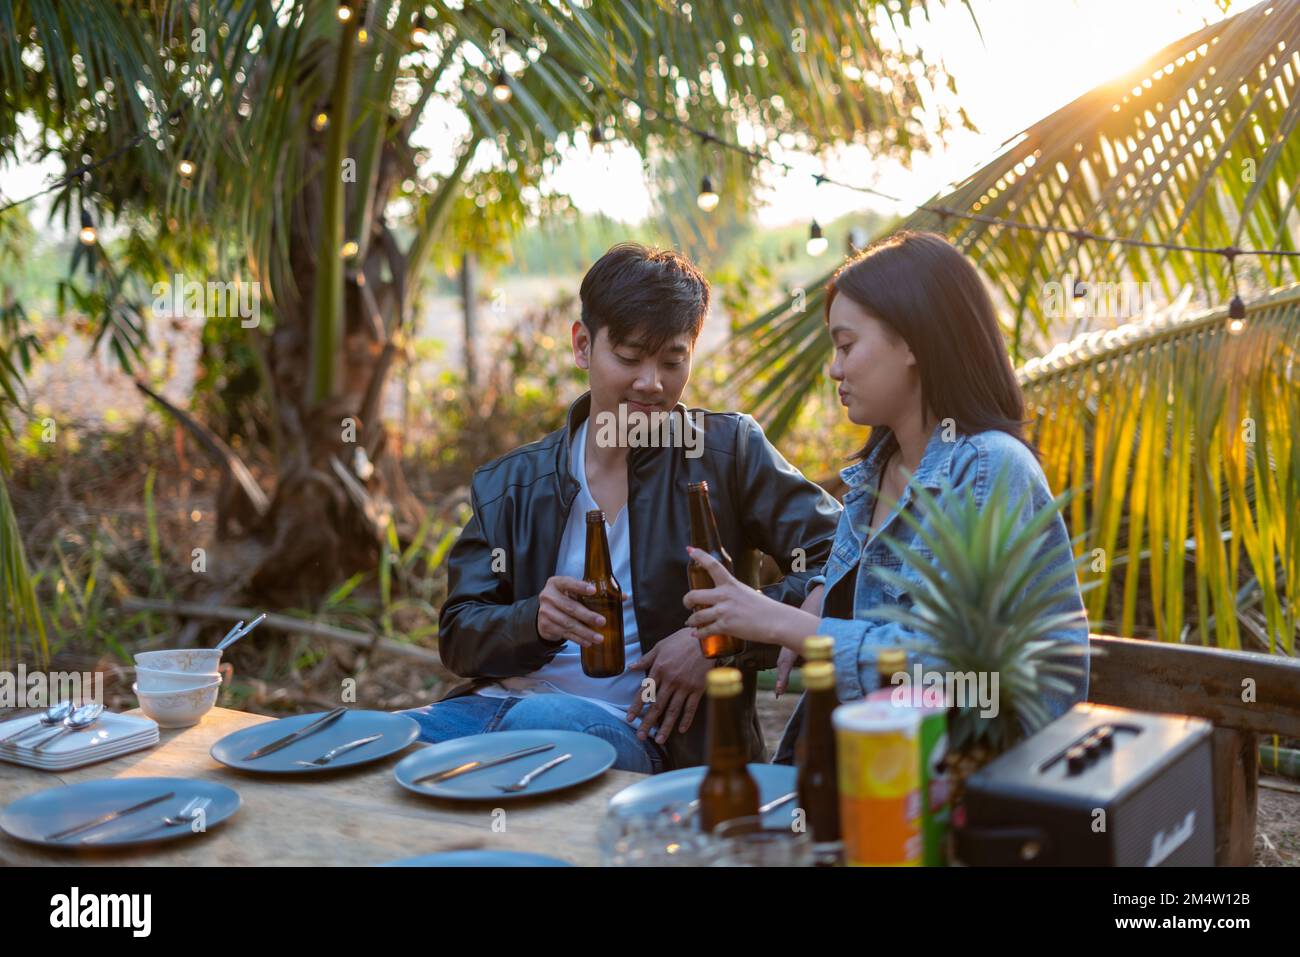 Un jeune couple asiatique se fait griller avec de la bière lors d'une fête au jardin de noix de coco Banque D'Images